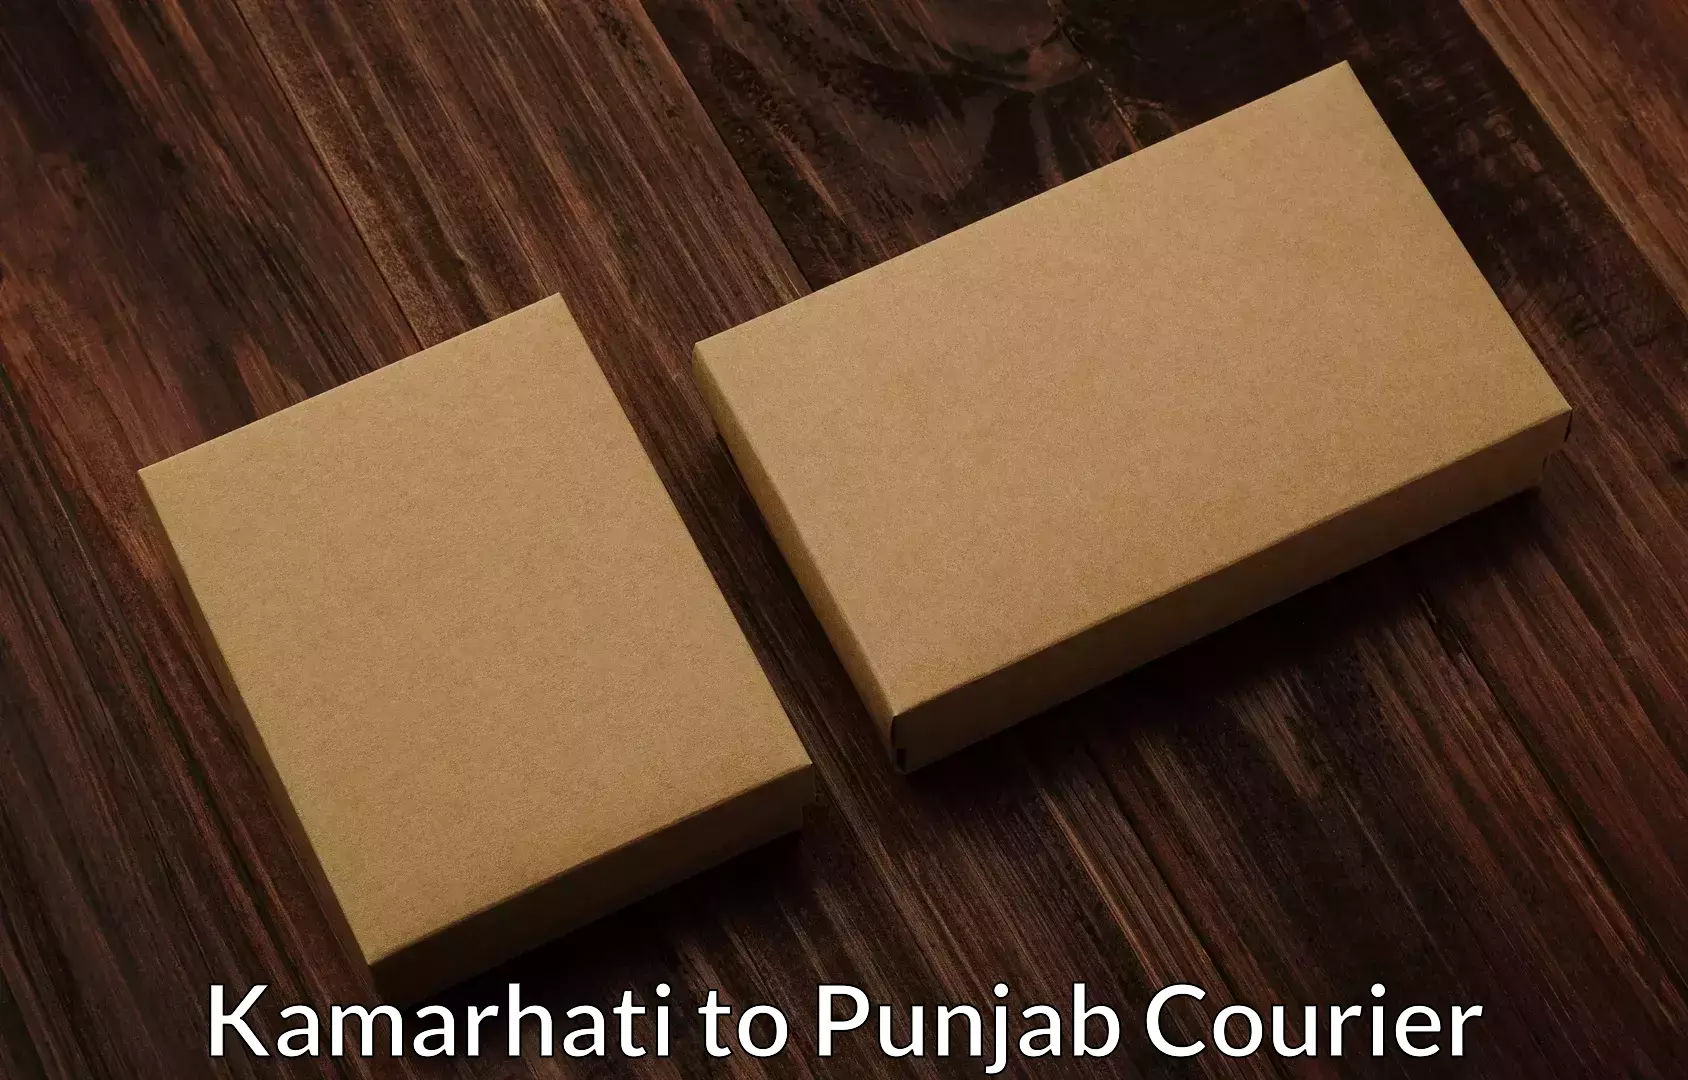 Skilled furniture transporters Kamarhati to Punjab